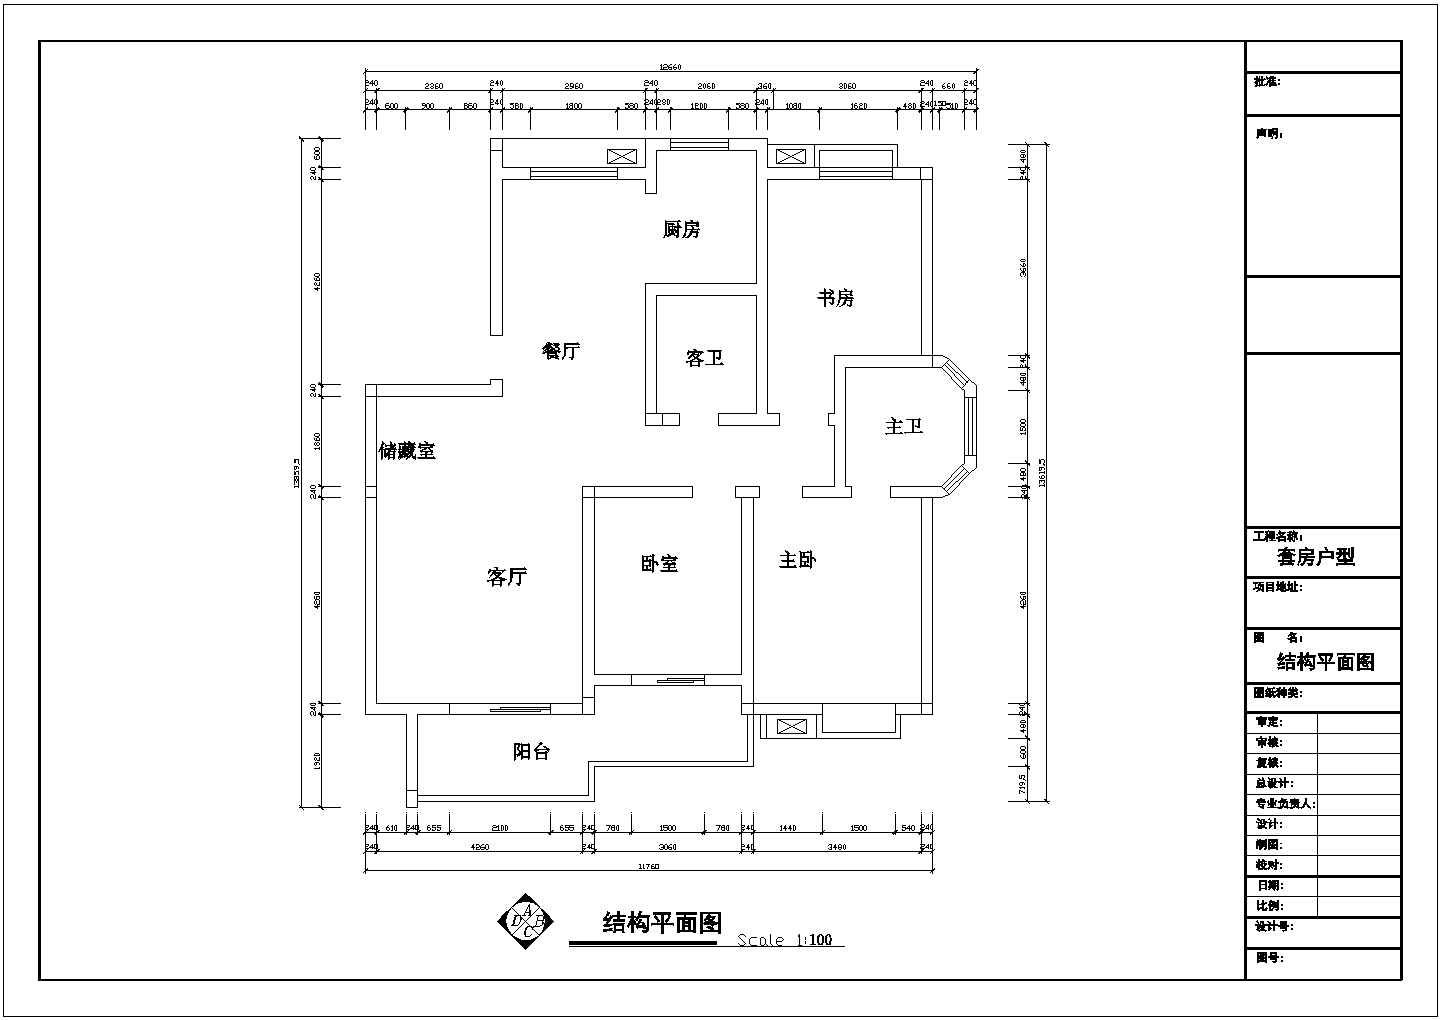 套房户型设计图纸【3室2厅2卫1阳台、长13.8595米、宽12.66米】